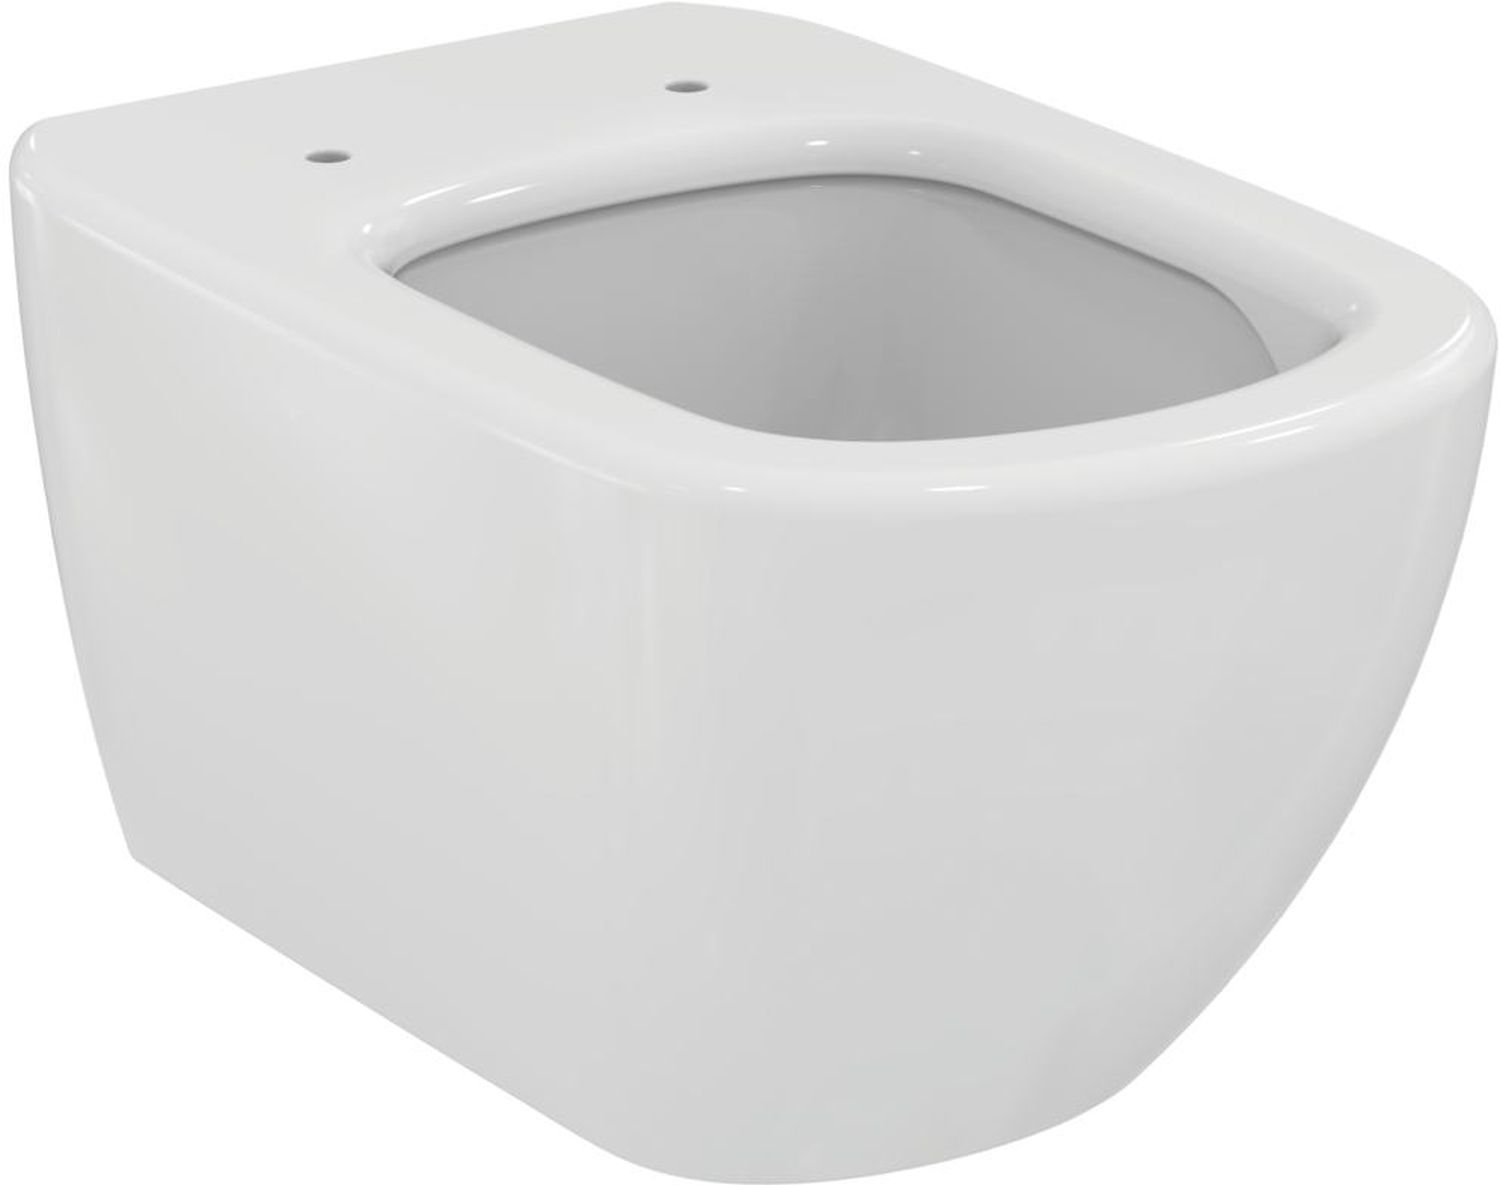 Ideal Standard Tesi záchodová mísa závěsný bílá T007901